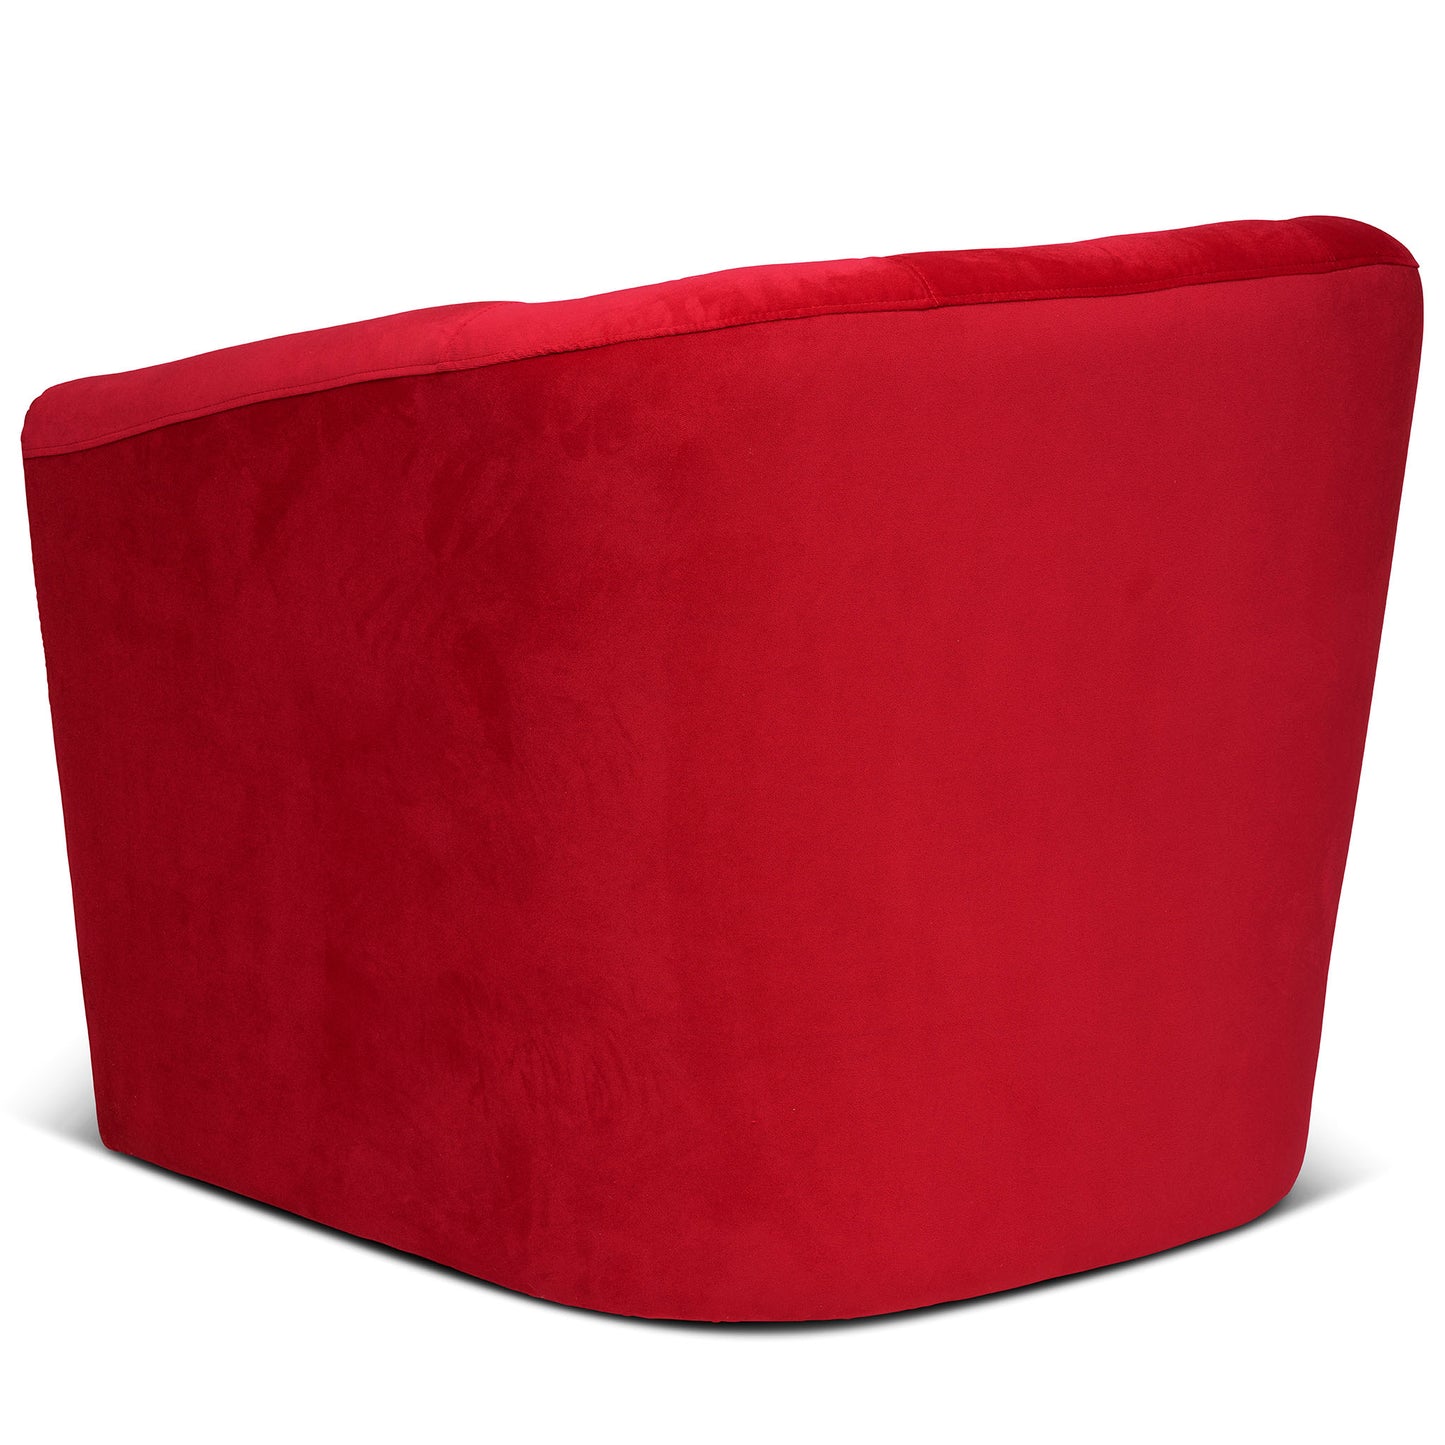 Sidovy på en snygg röd loungefåtlj med snurrfunktion